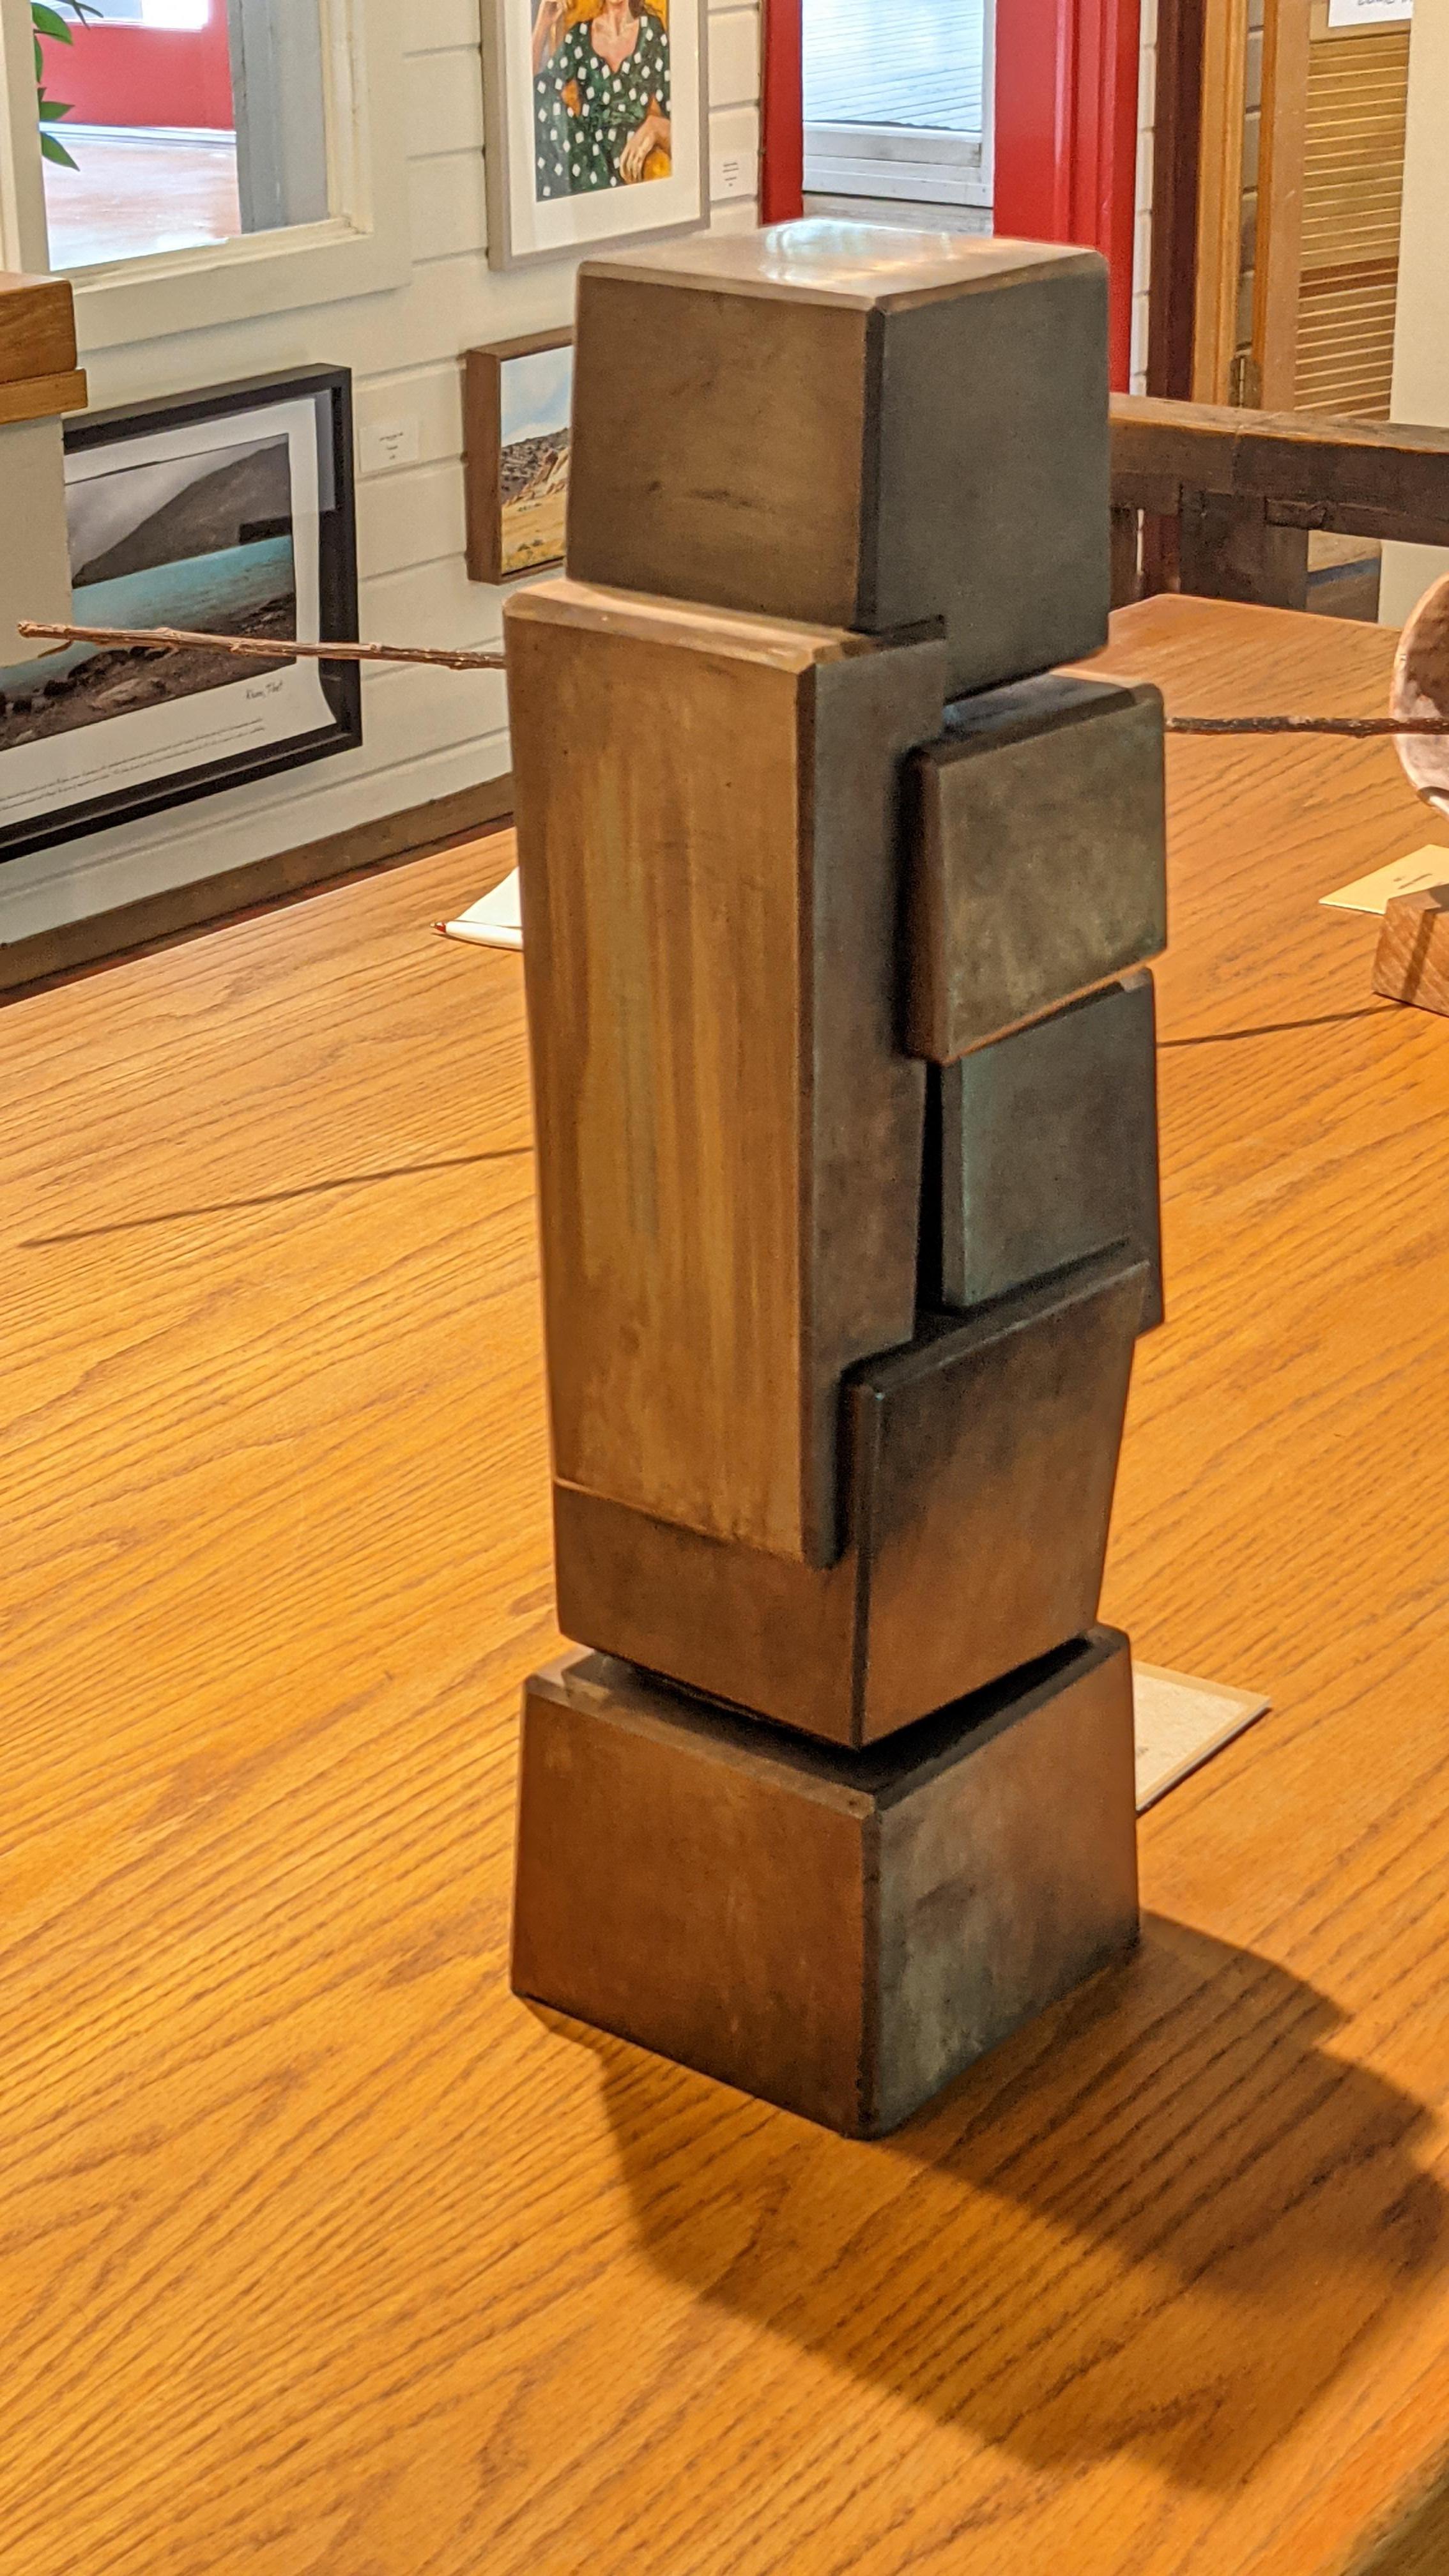 #138, par Cordell Taylor, acier, 18 x 6 x 5 pouces, 3 800 $

Le sculpteur international Cordell Taylor est né dans le Wyoming et a suivi une formation en sculpture à l'université de l'Utah. Connu pour ses sculptures abstraites en métal, ses meubles